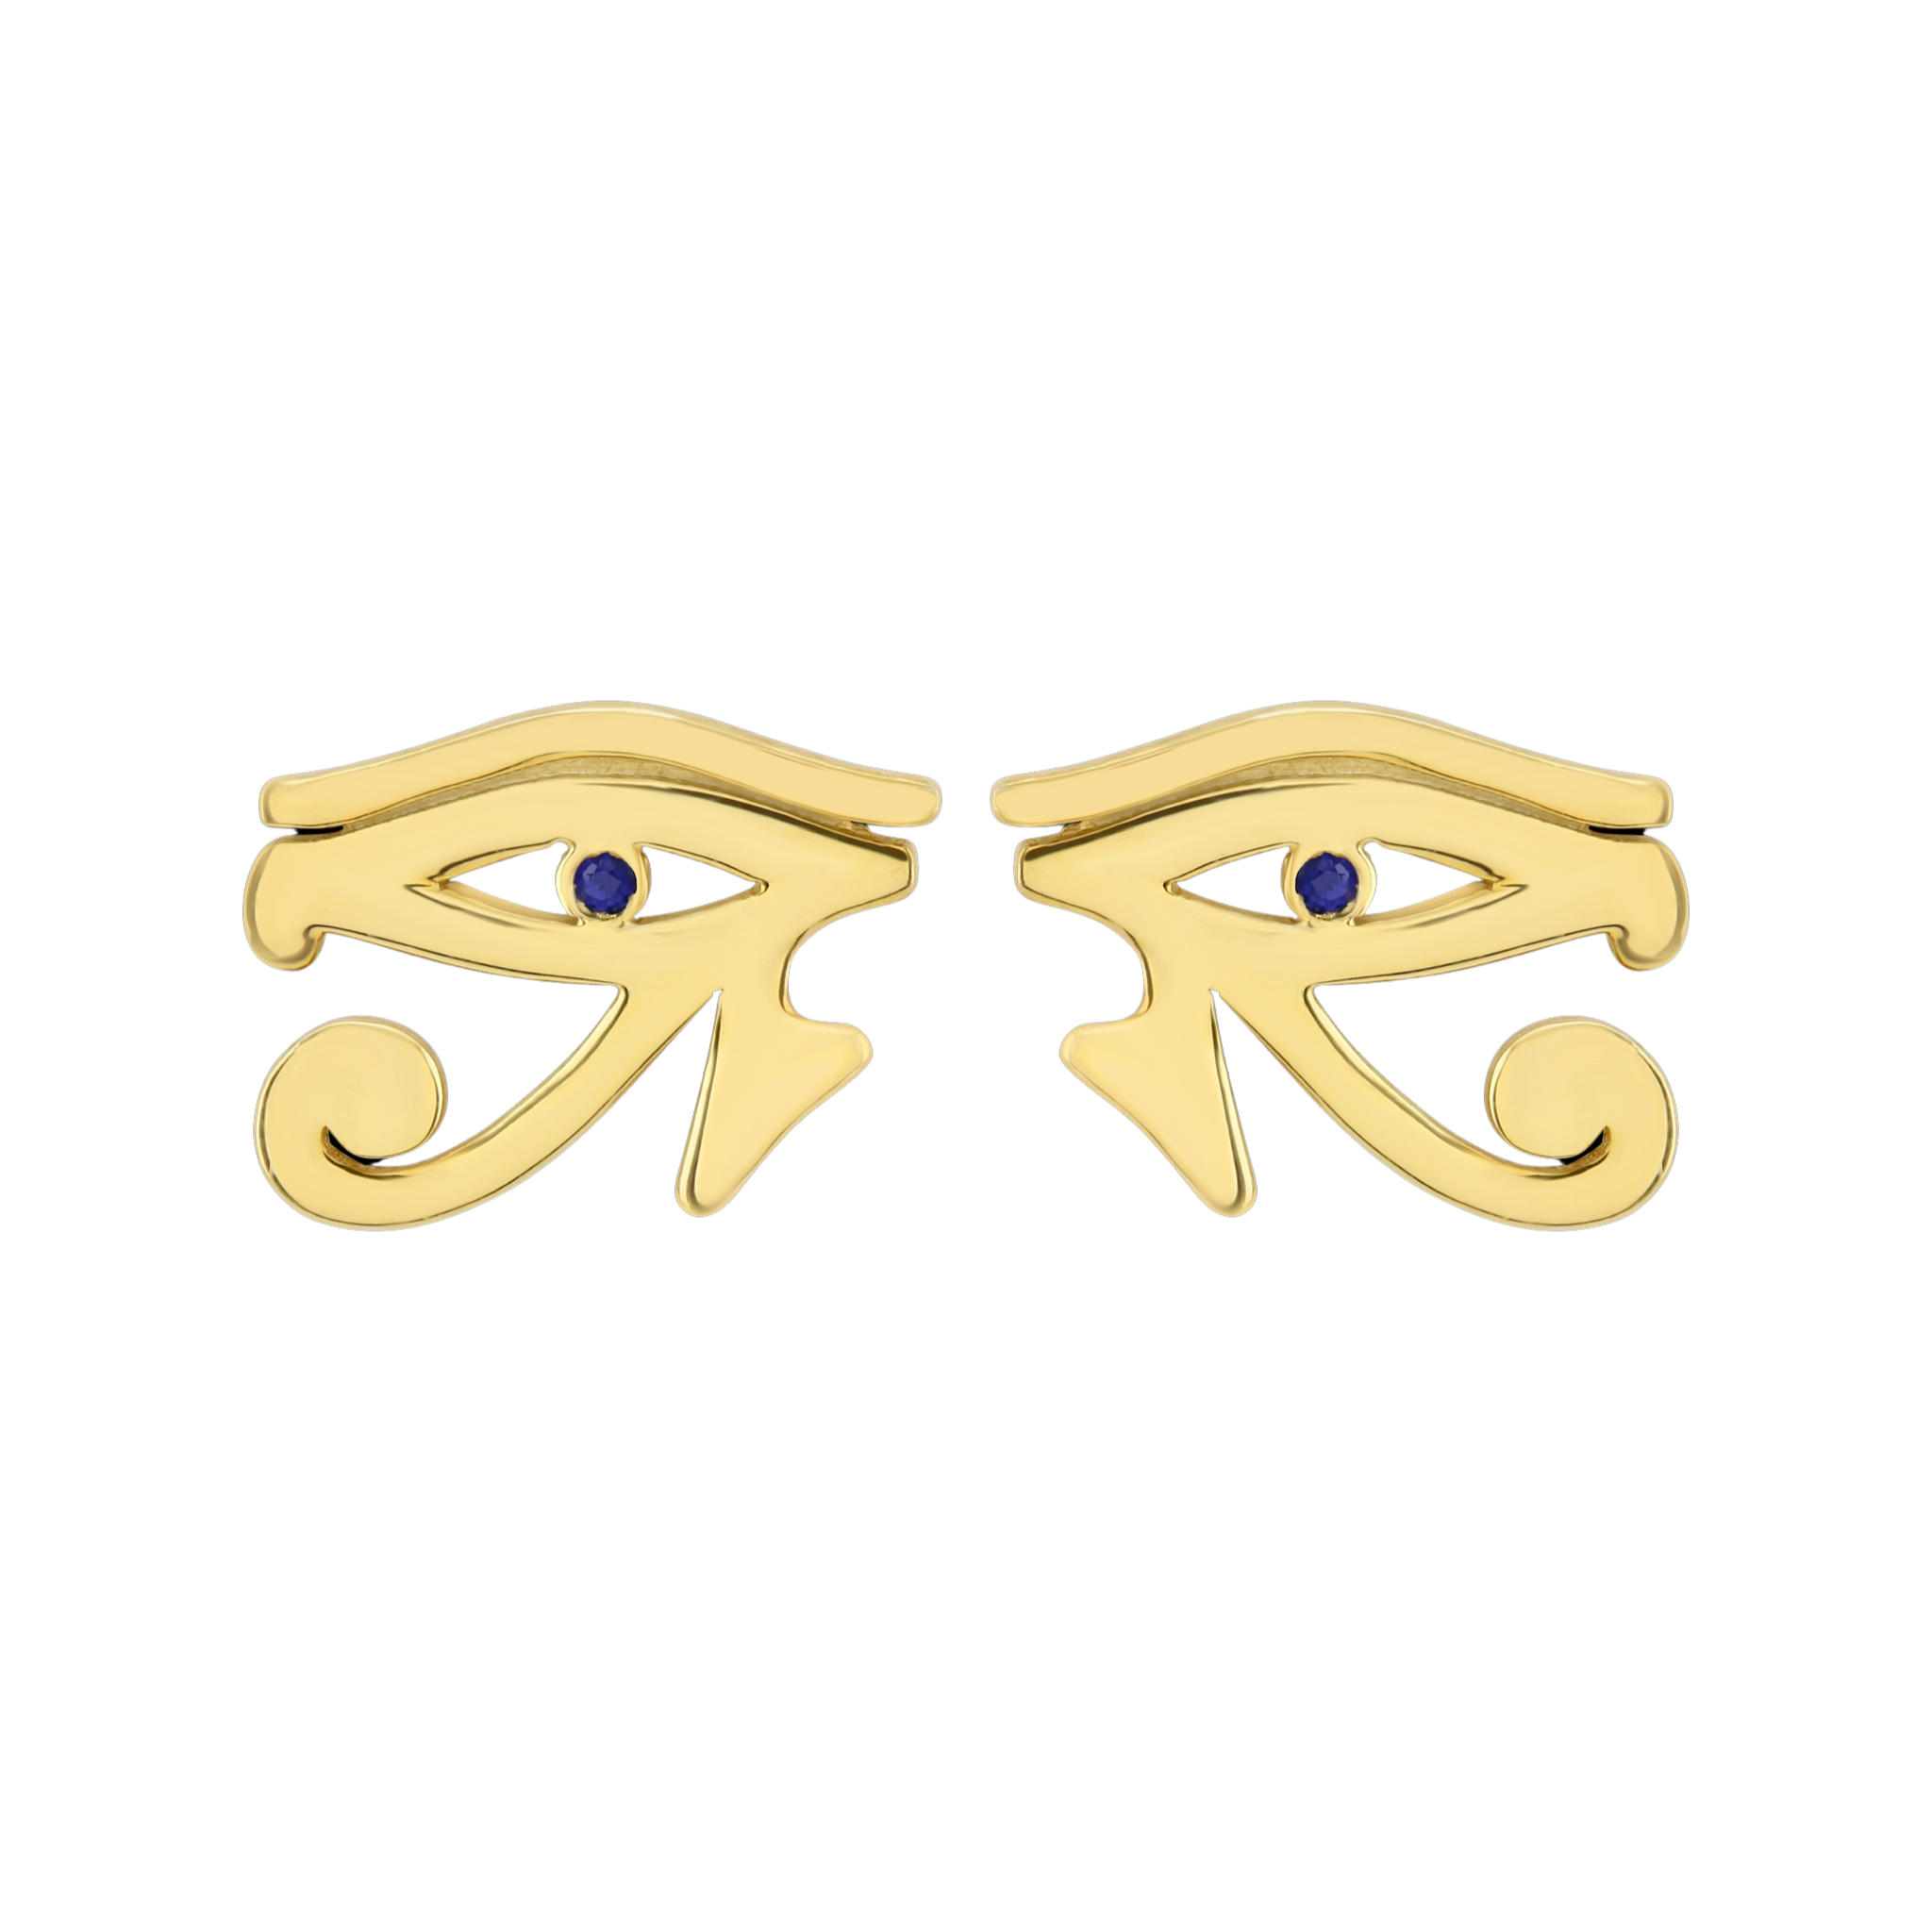 Sterling Silver Eye of Horus earrings